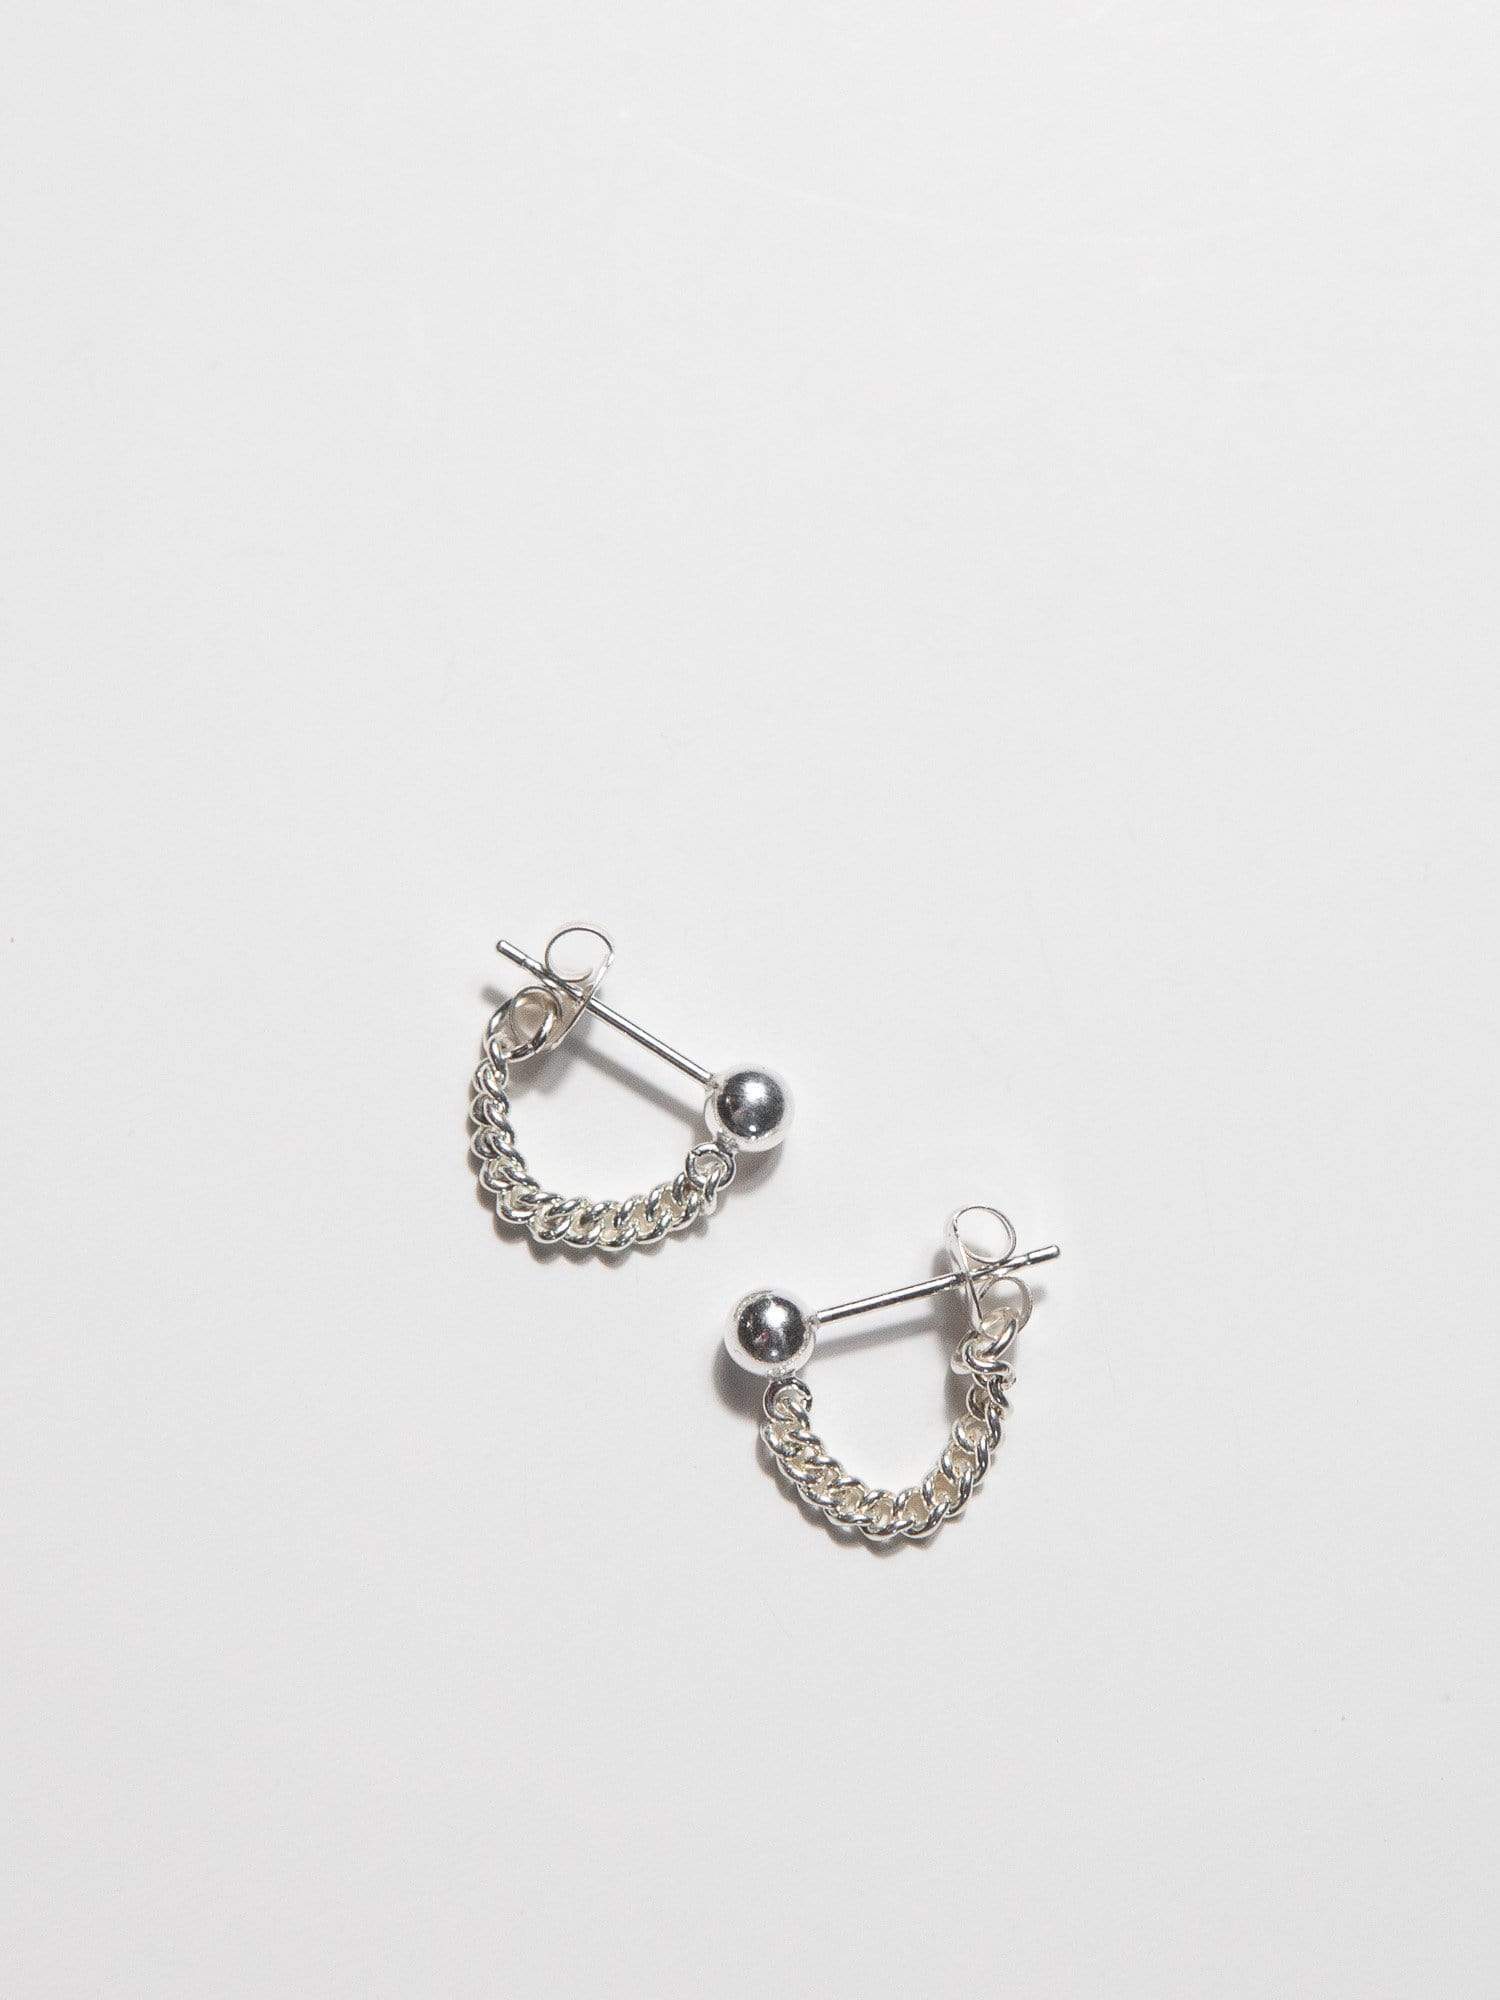 OXB Studio Earrings Sterling Silver / Curb Ball & Chain Earrings